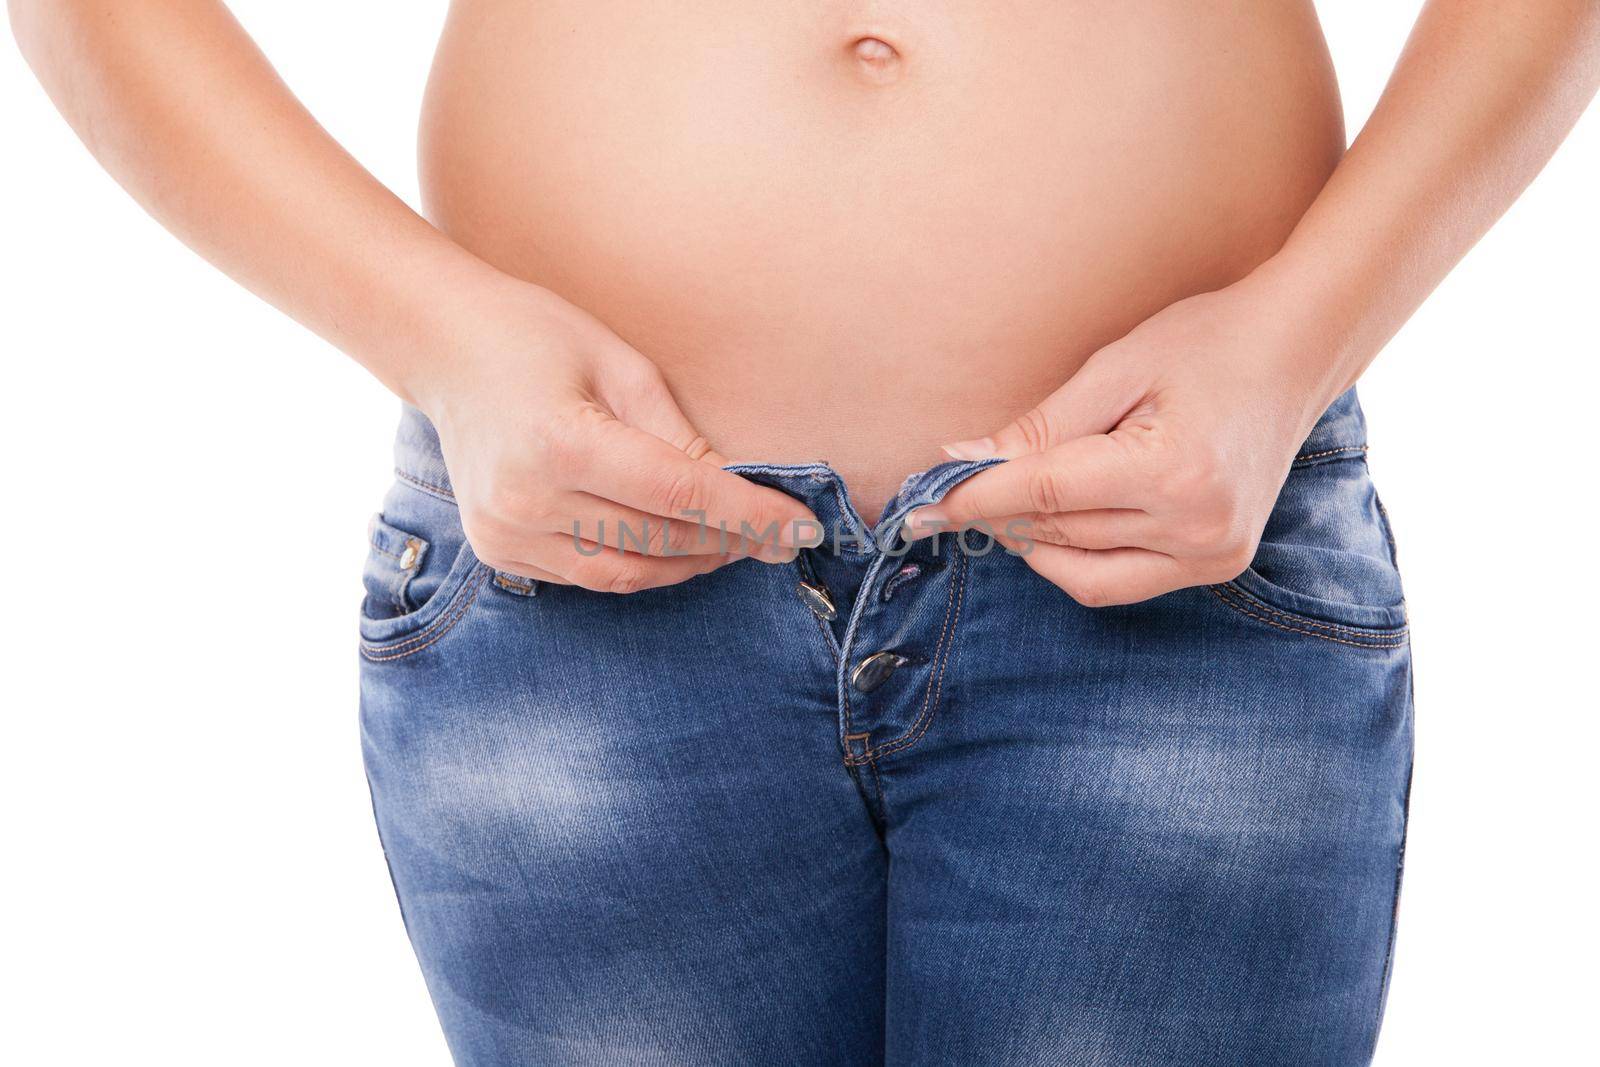 Pregnant belly woman wearing jeans by Julenochek